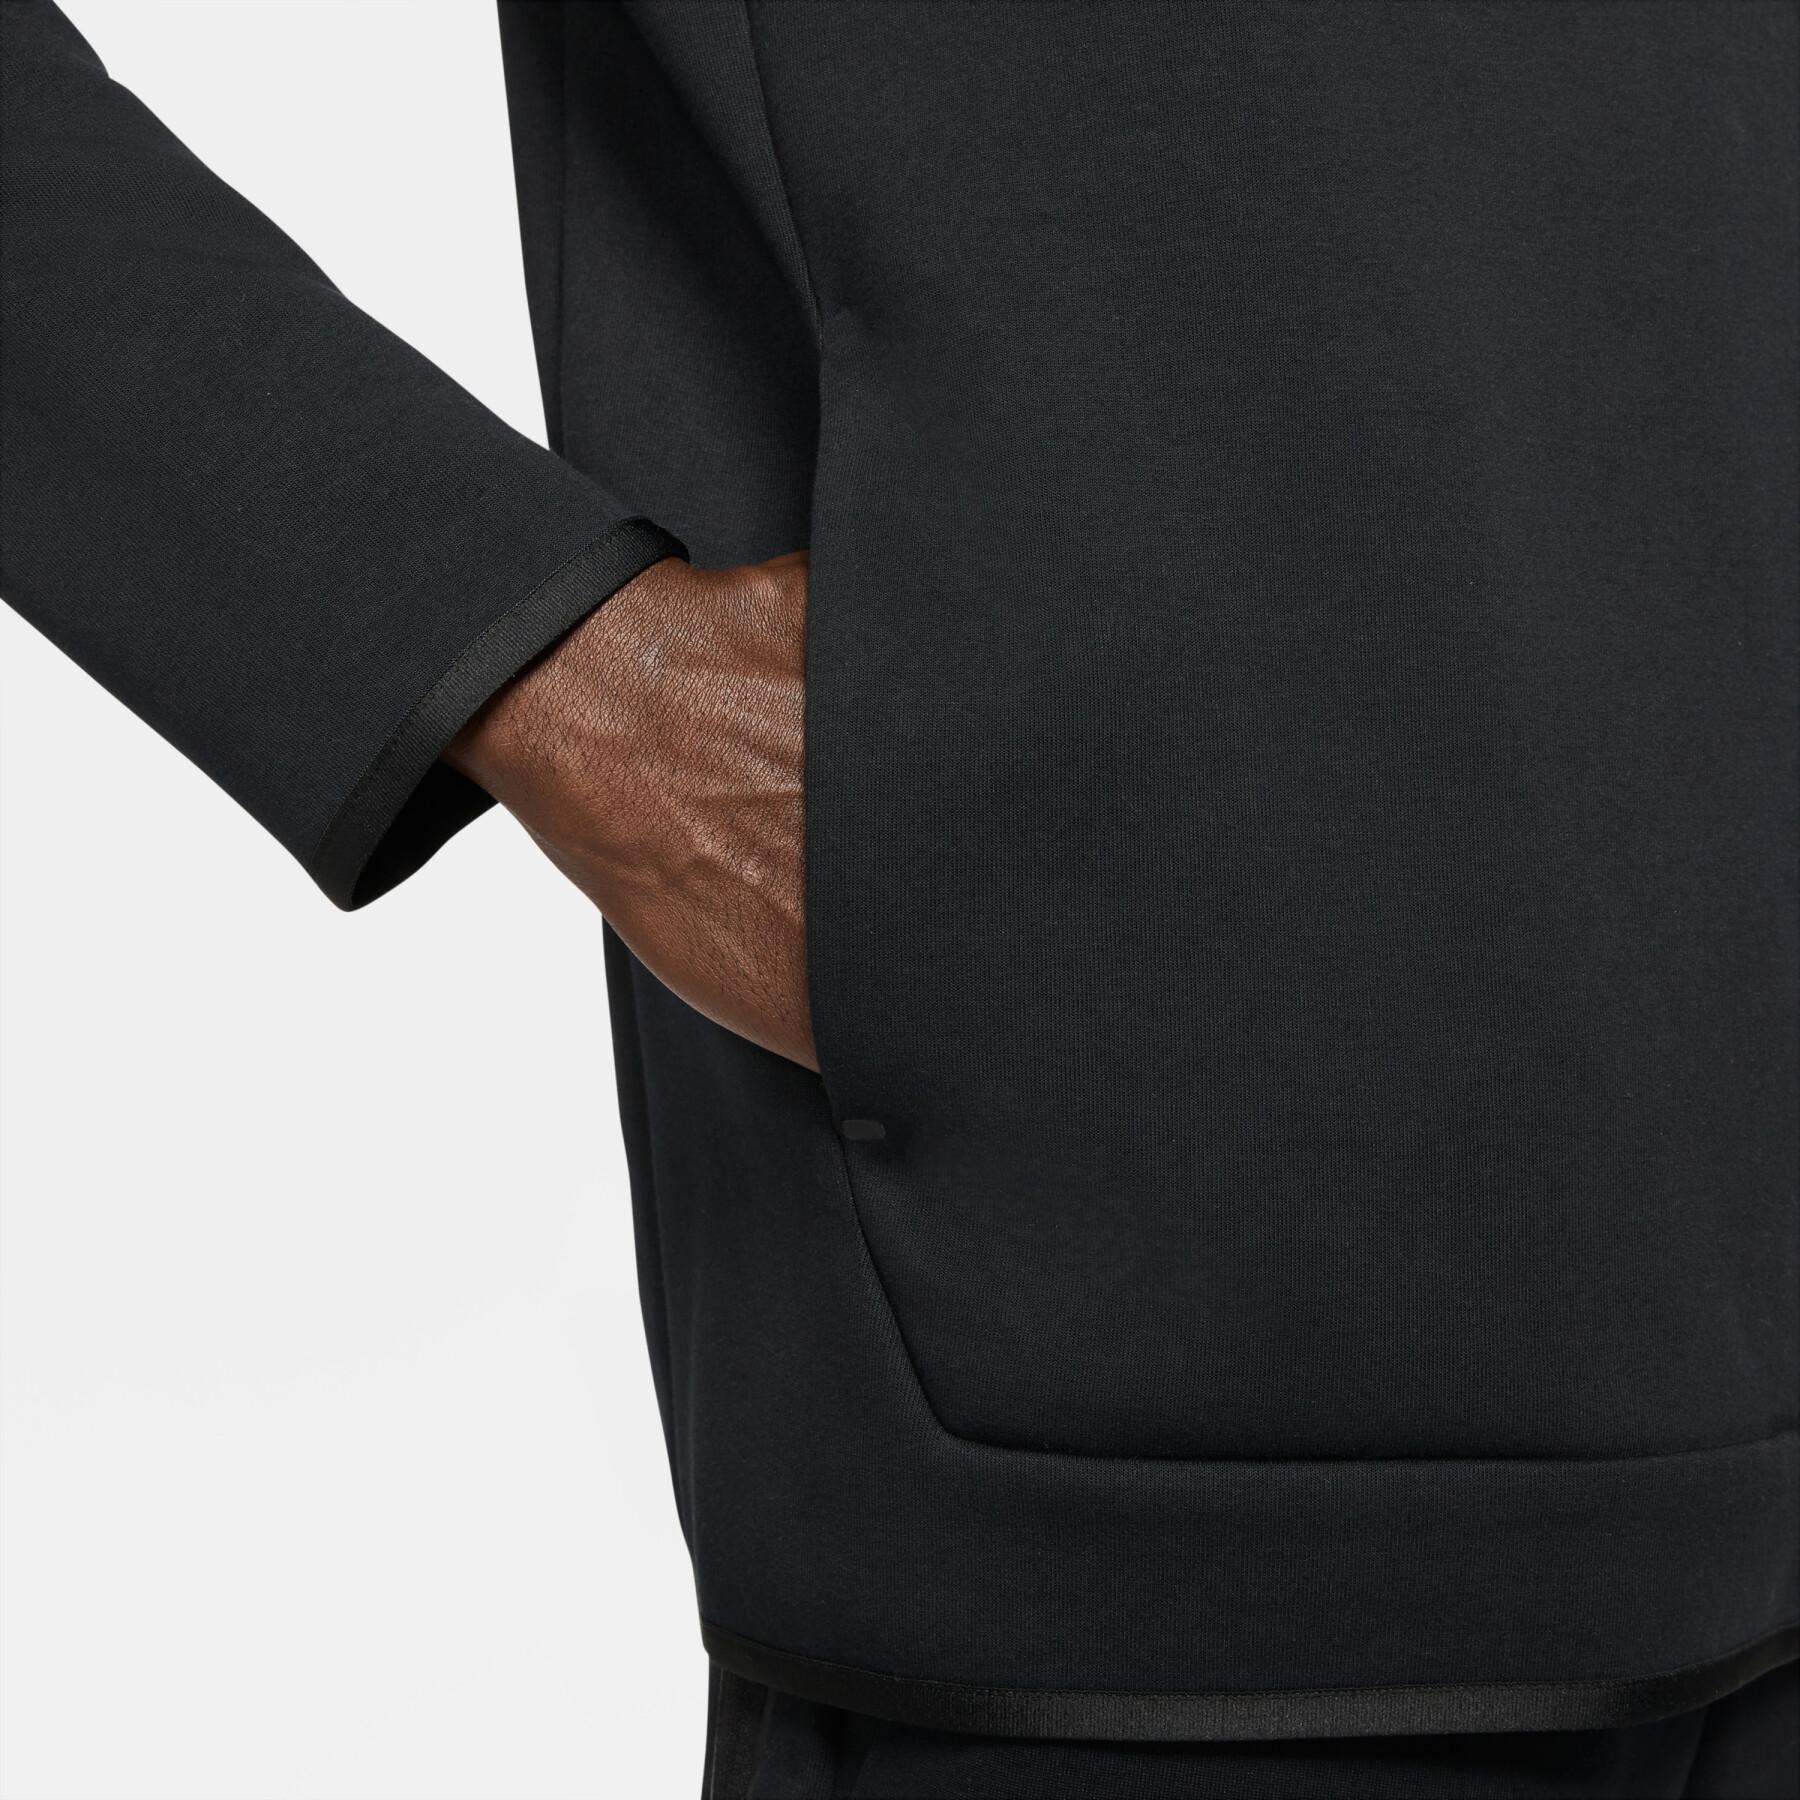 Hooded sweatshirt Nike Tech Fleece